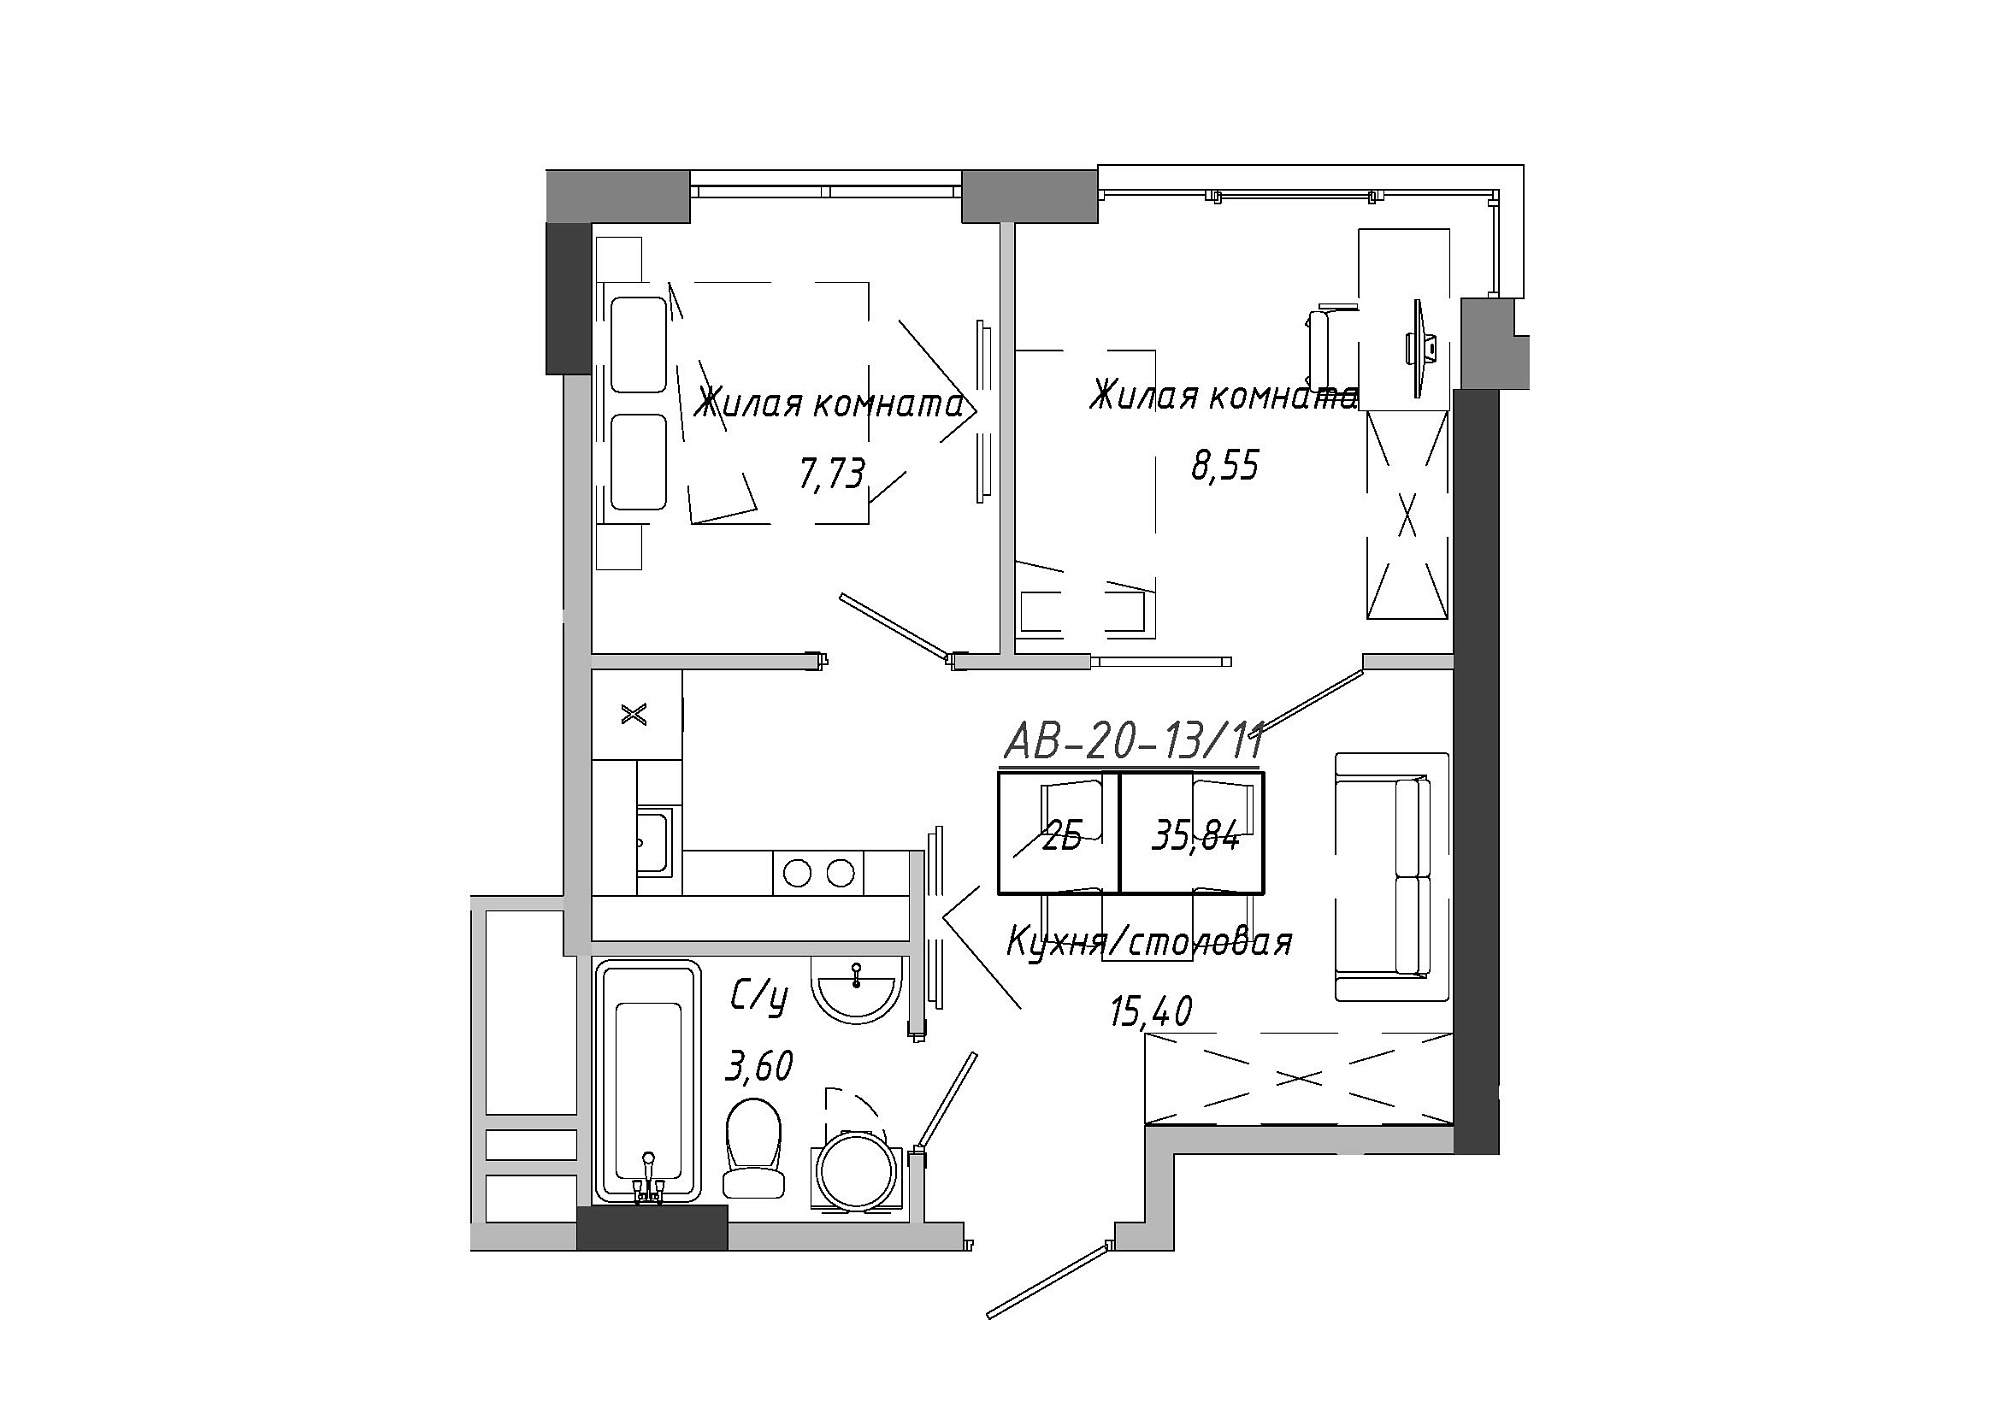 Планування 2-к квартира площею 35.84м2, AB-20-13/00111.